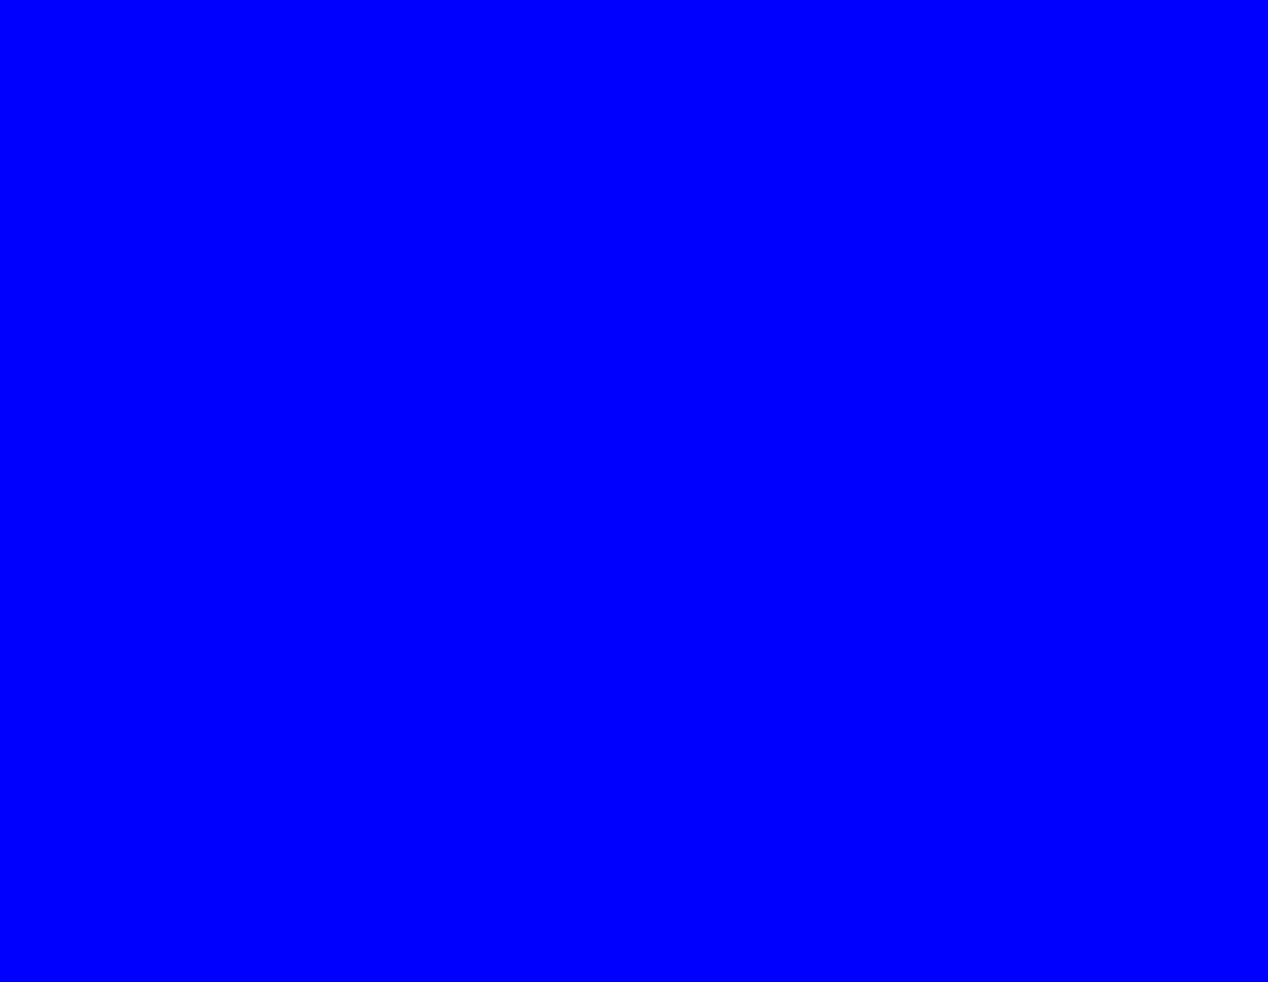 Pure blue Test Screen